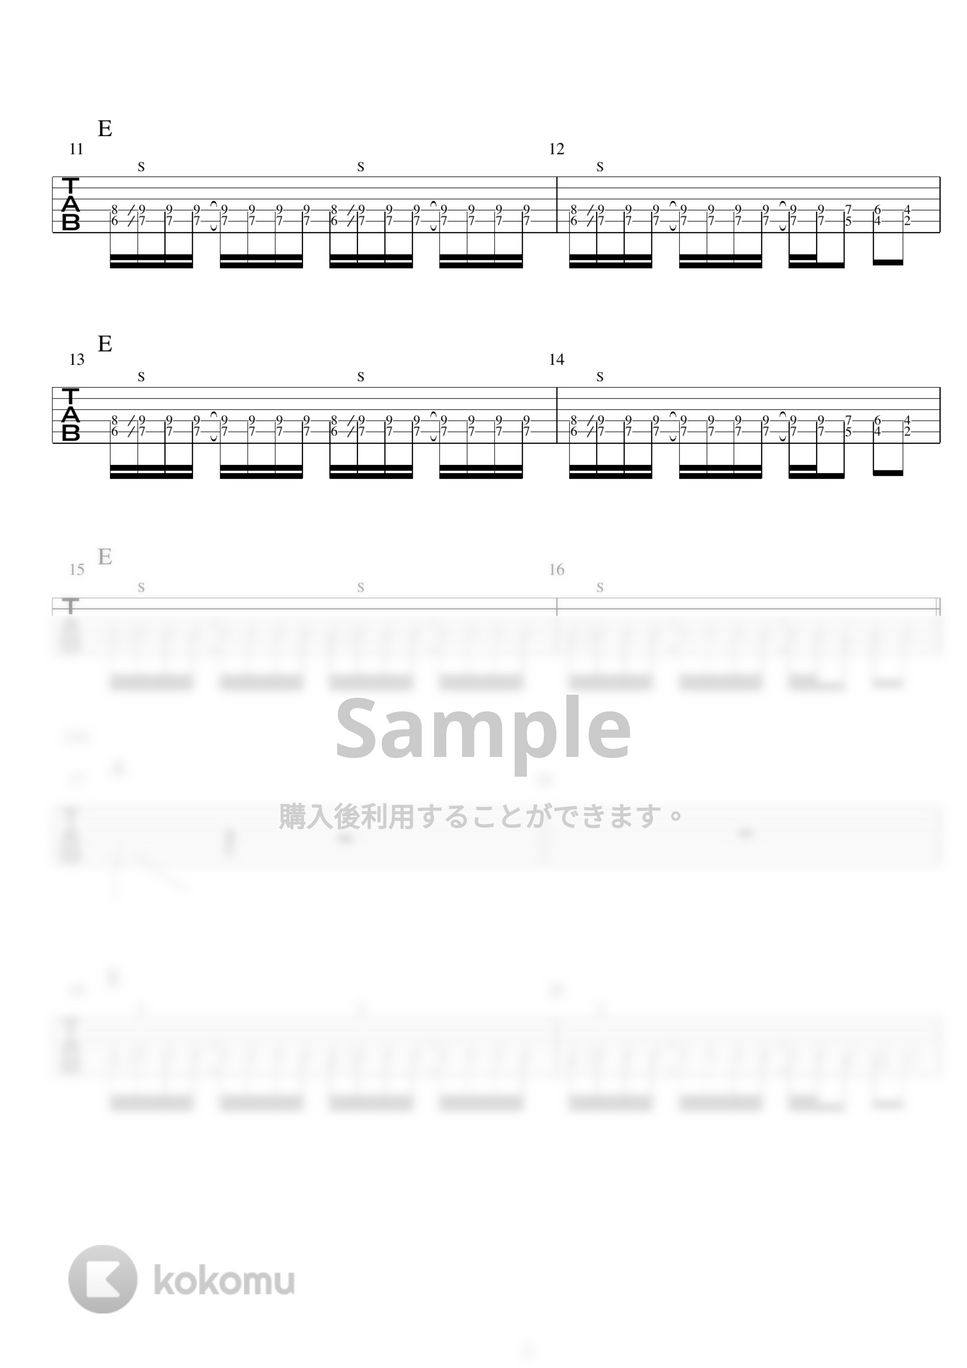 布袋寅泰 - バンビーナ (ギターTAB譜) by バイトーン音楽教室